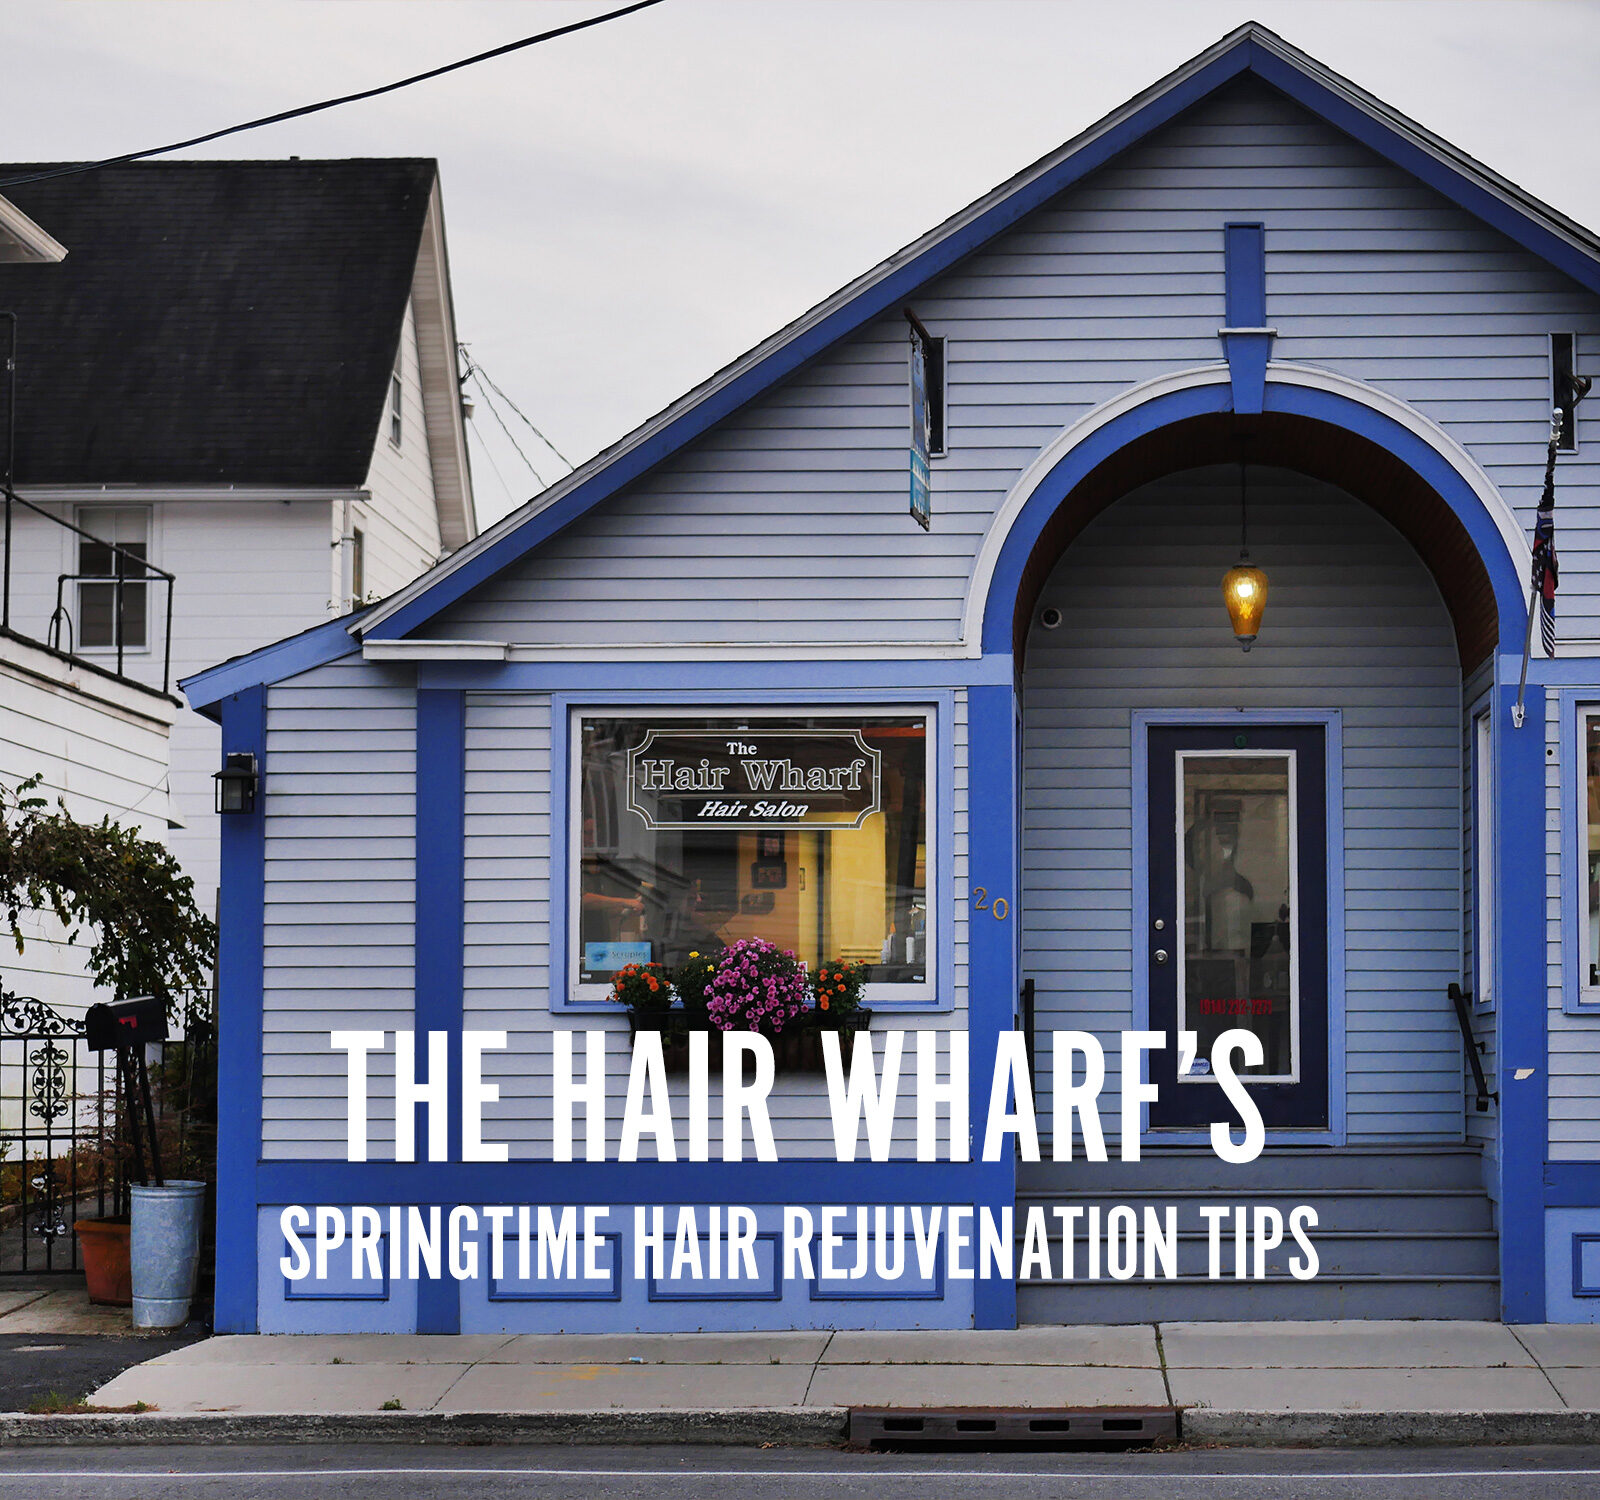 The Hair Wharf's Springtime Tips